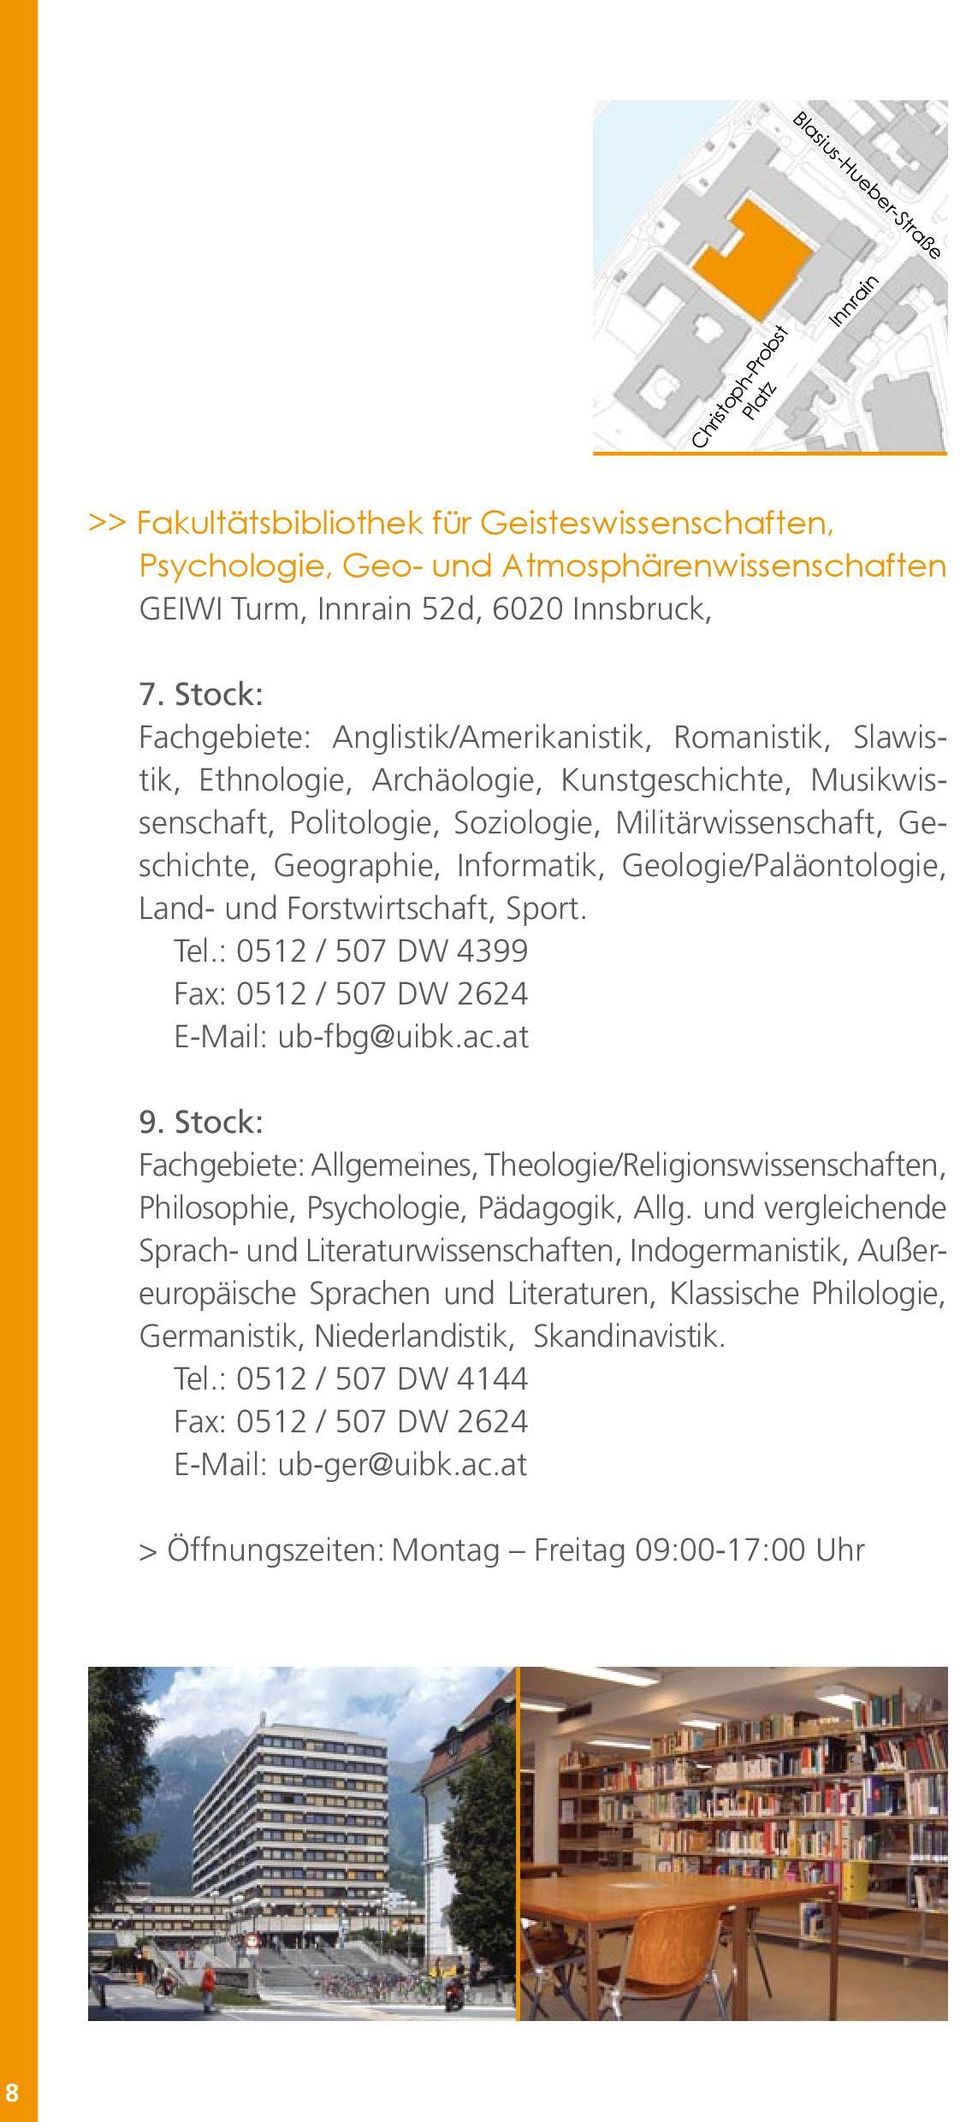 Informatik, Geologie/Paläontologie, Land- und Forstwirtschaft, Sport. Tel.: 0512 / 507 DW 4399 Fax: 0512 / 507 DW 2624 E-Mail: ub-fbg@uibk.ac.at 9.